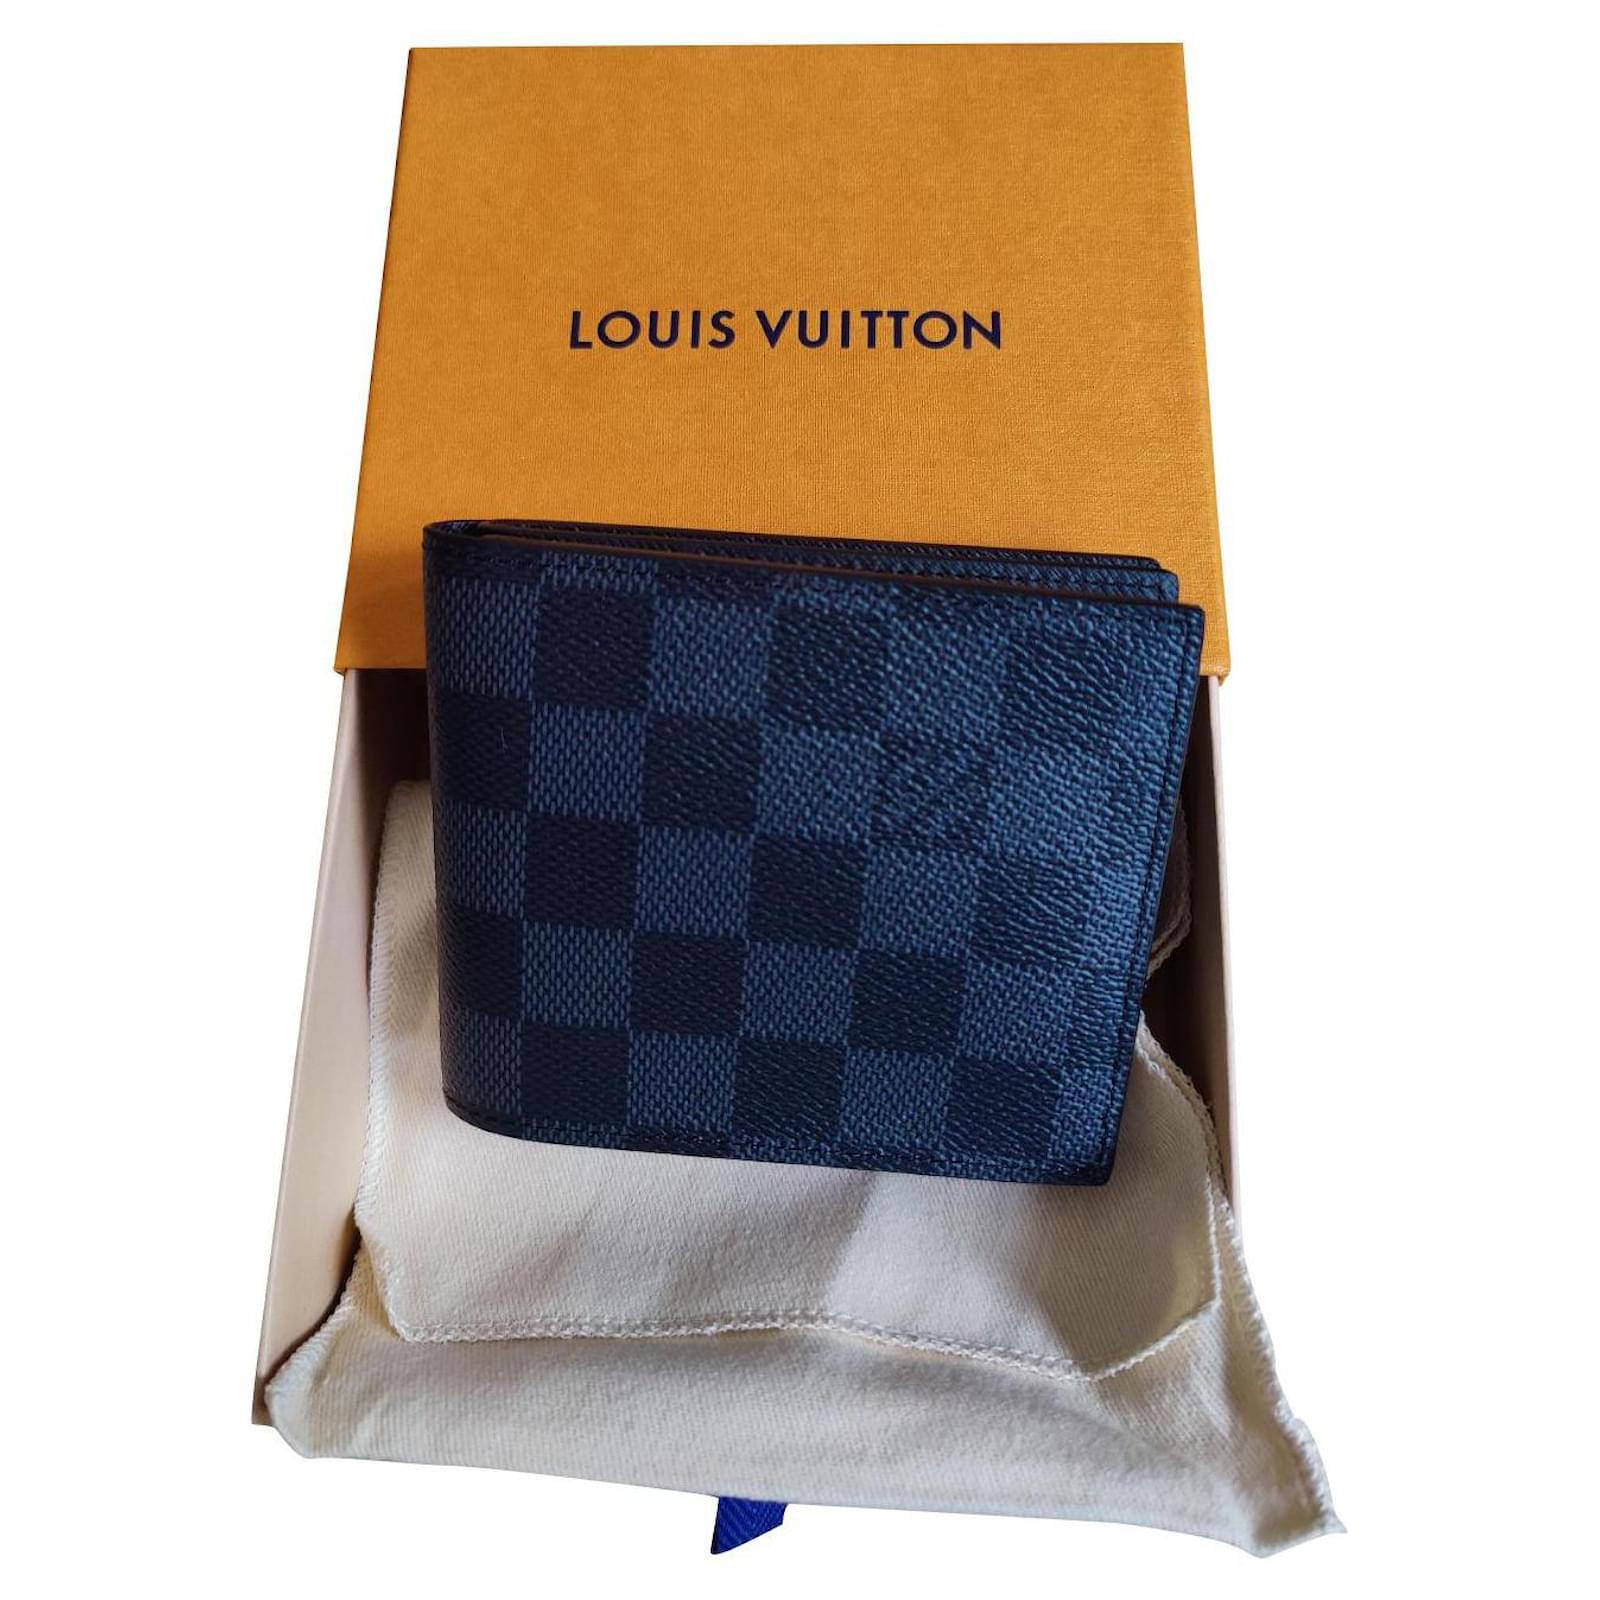 Louis Vuitton Amerigo – The Brand Collector